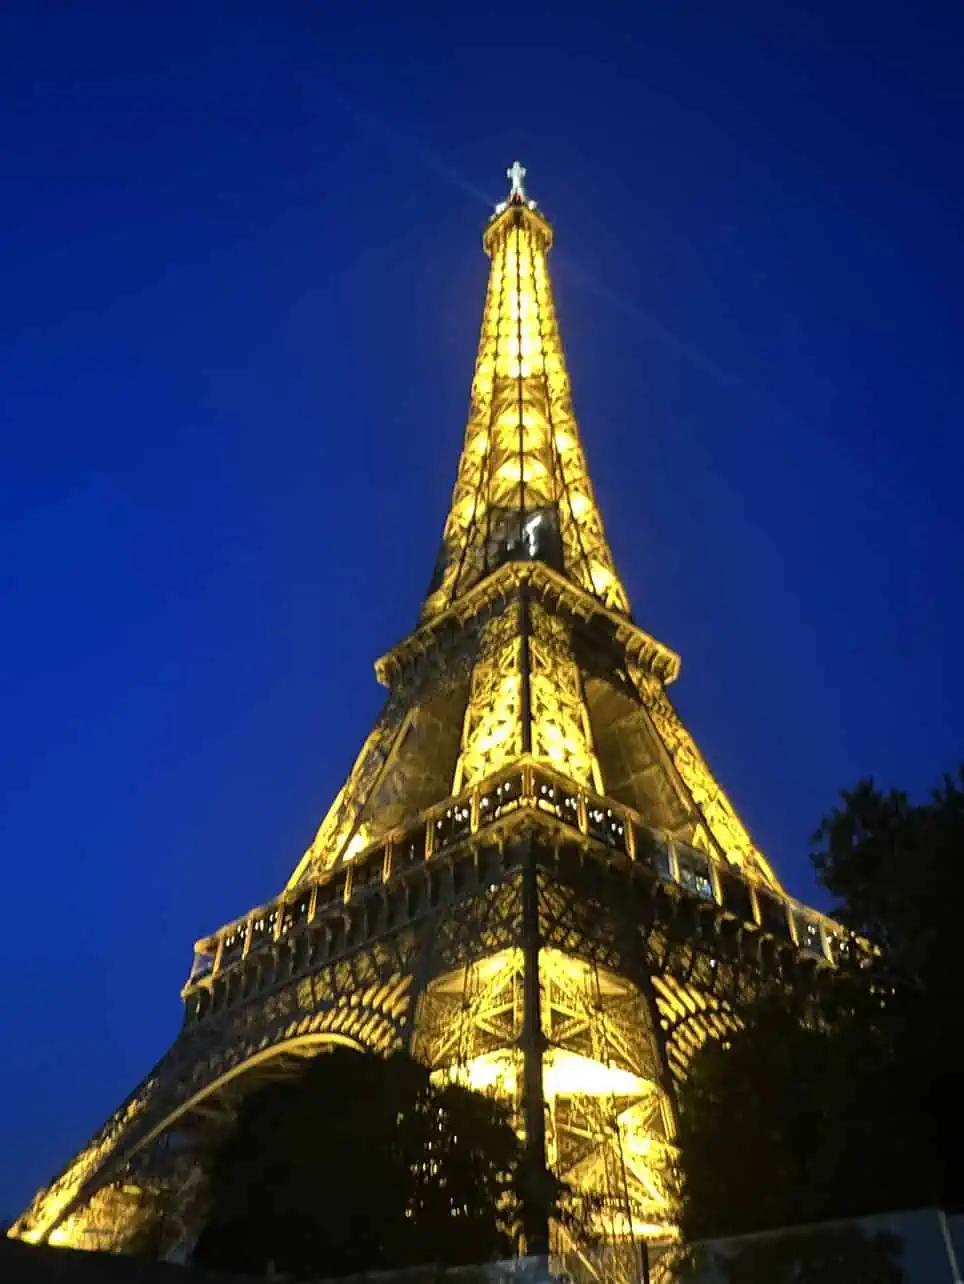 Eiffel Tower by night